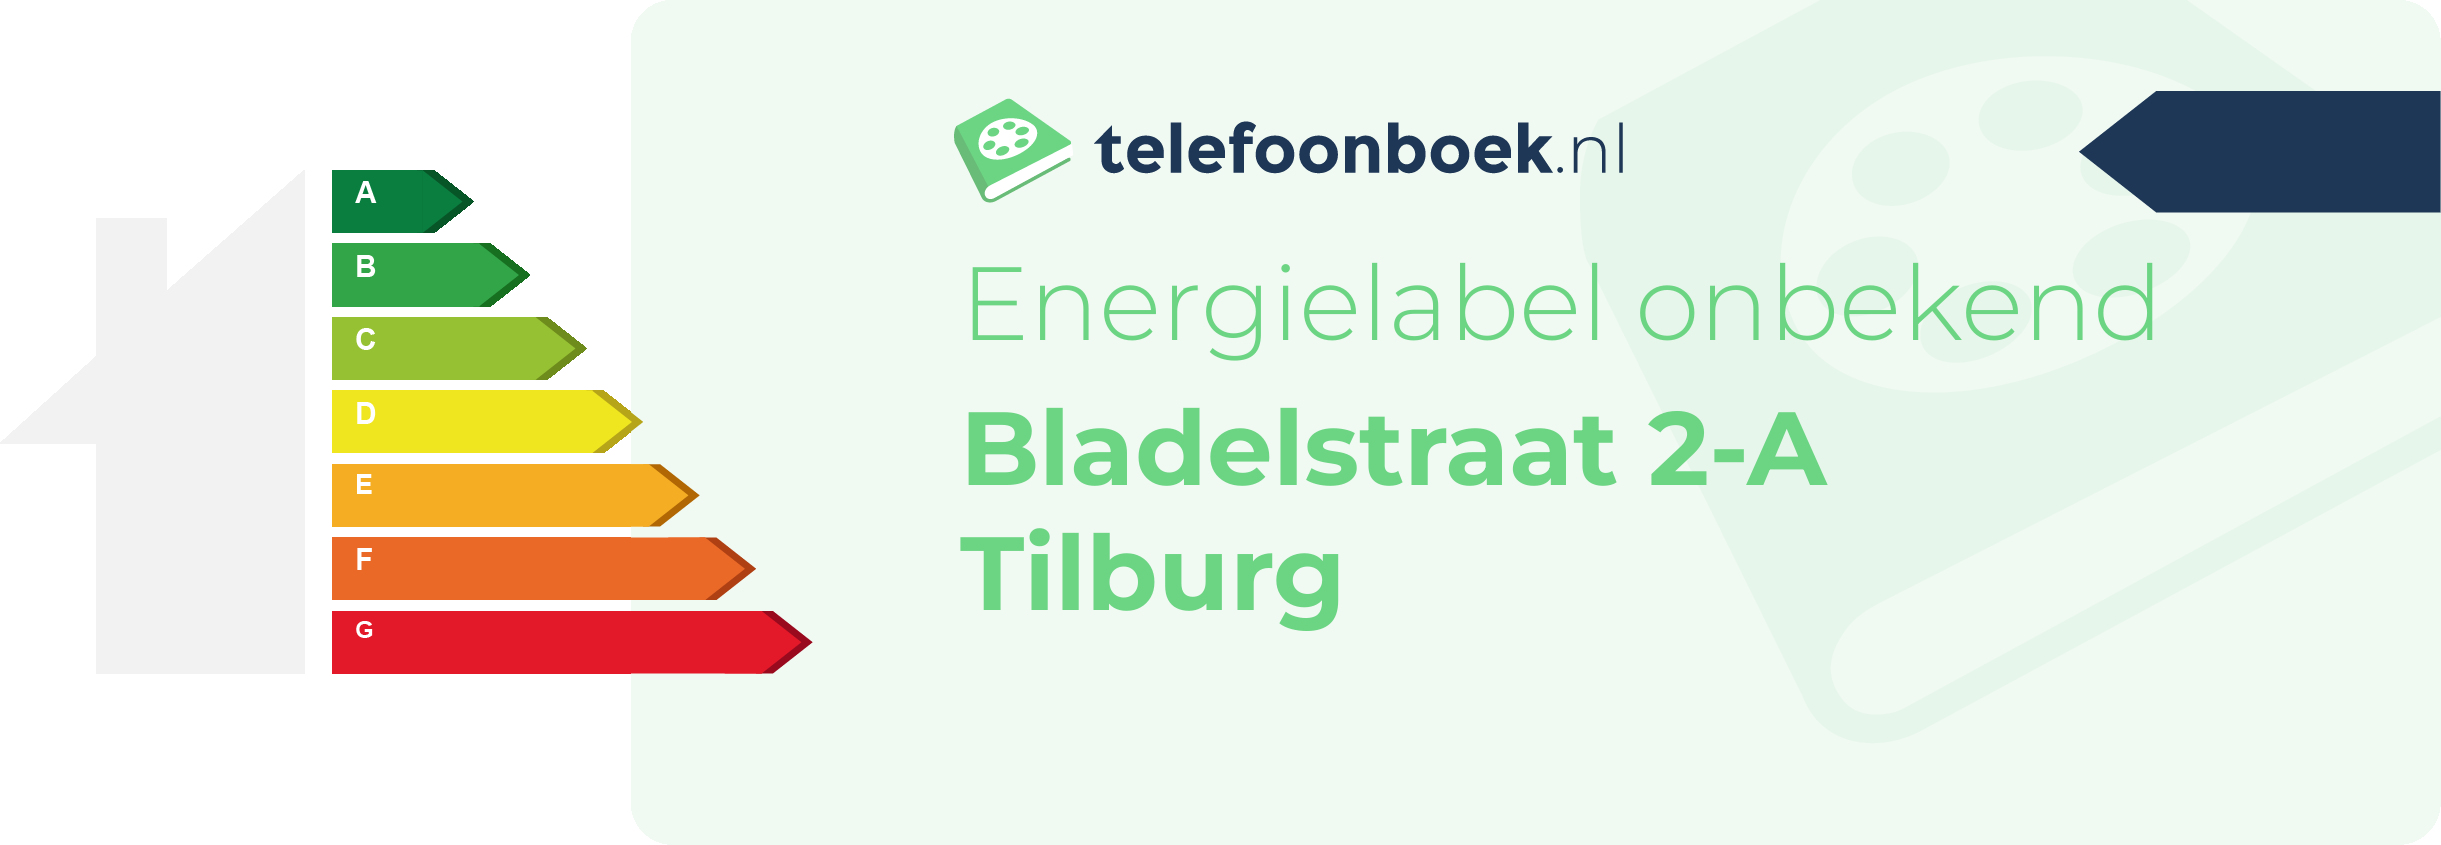 Energielabel Bladelstraat 2-A Tilburg